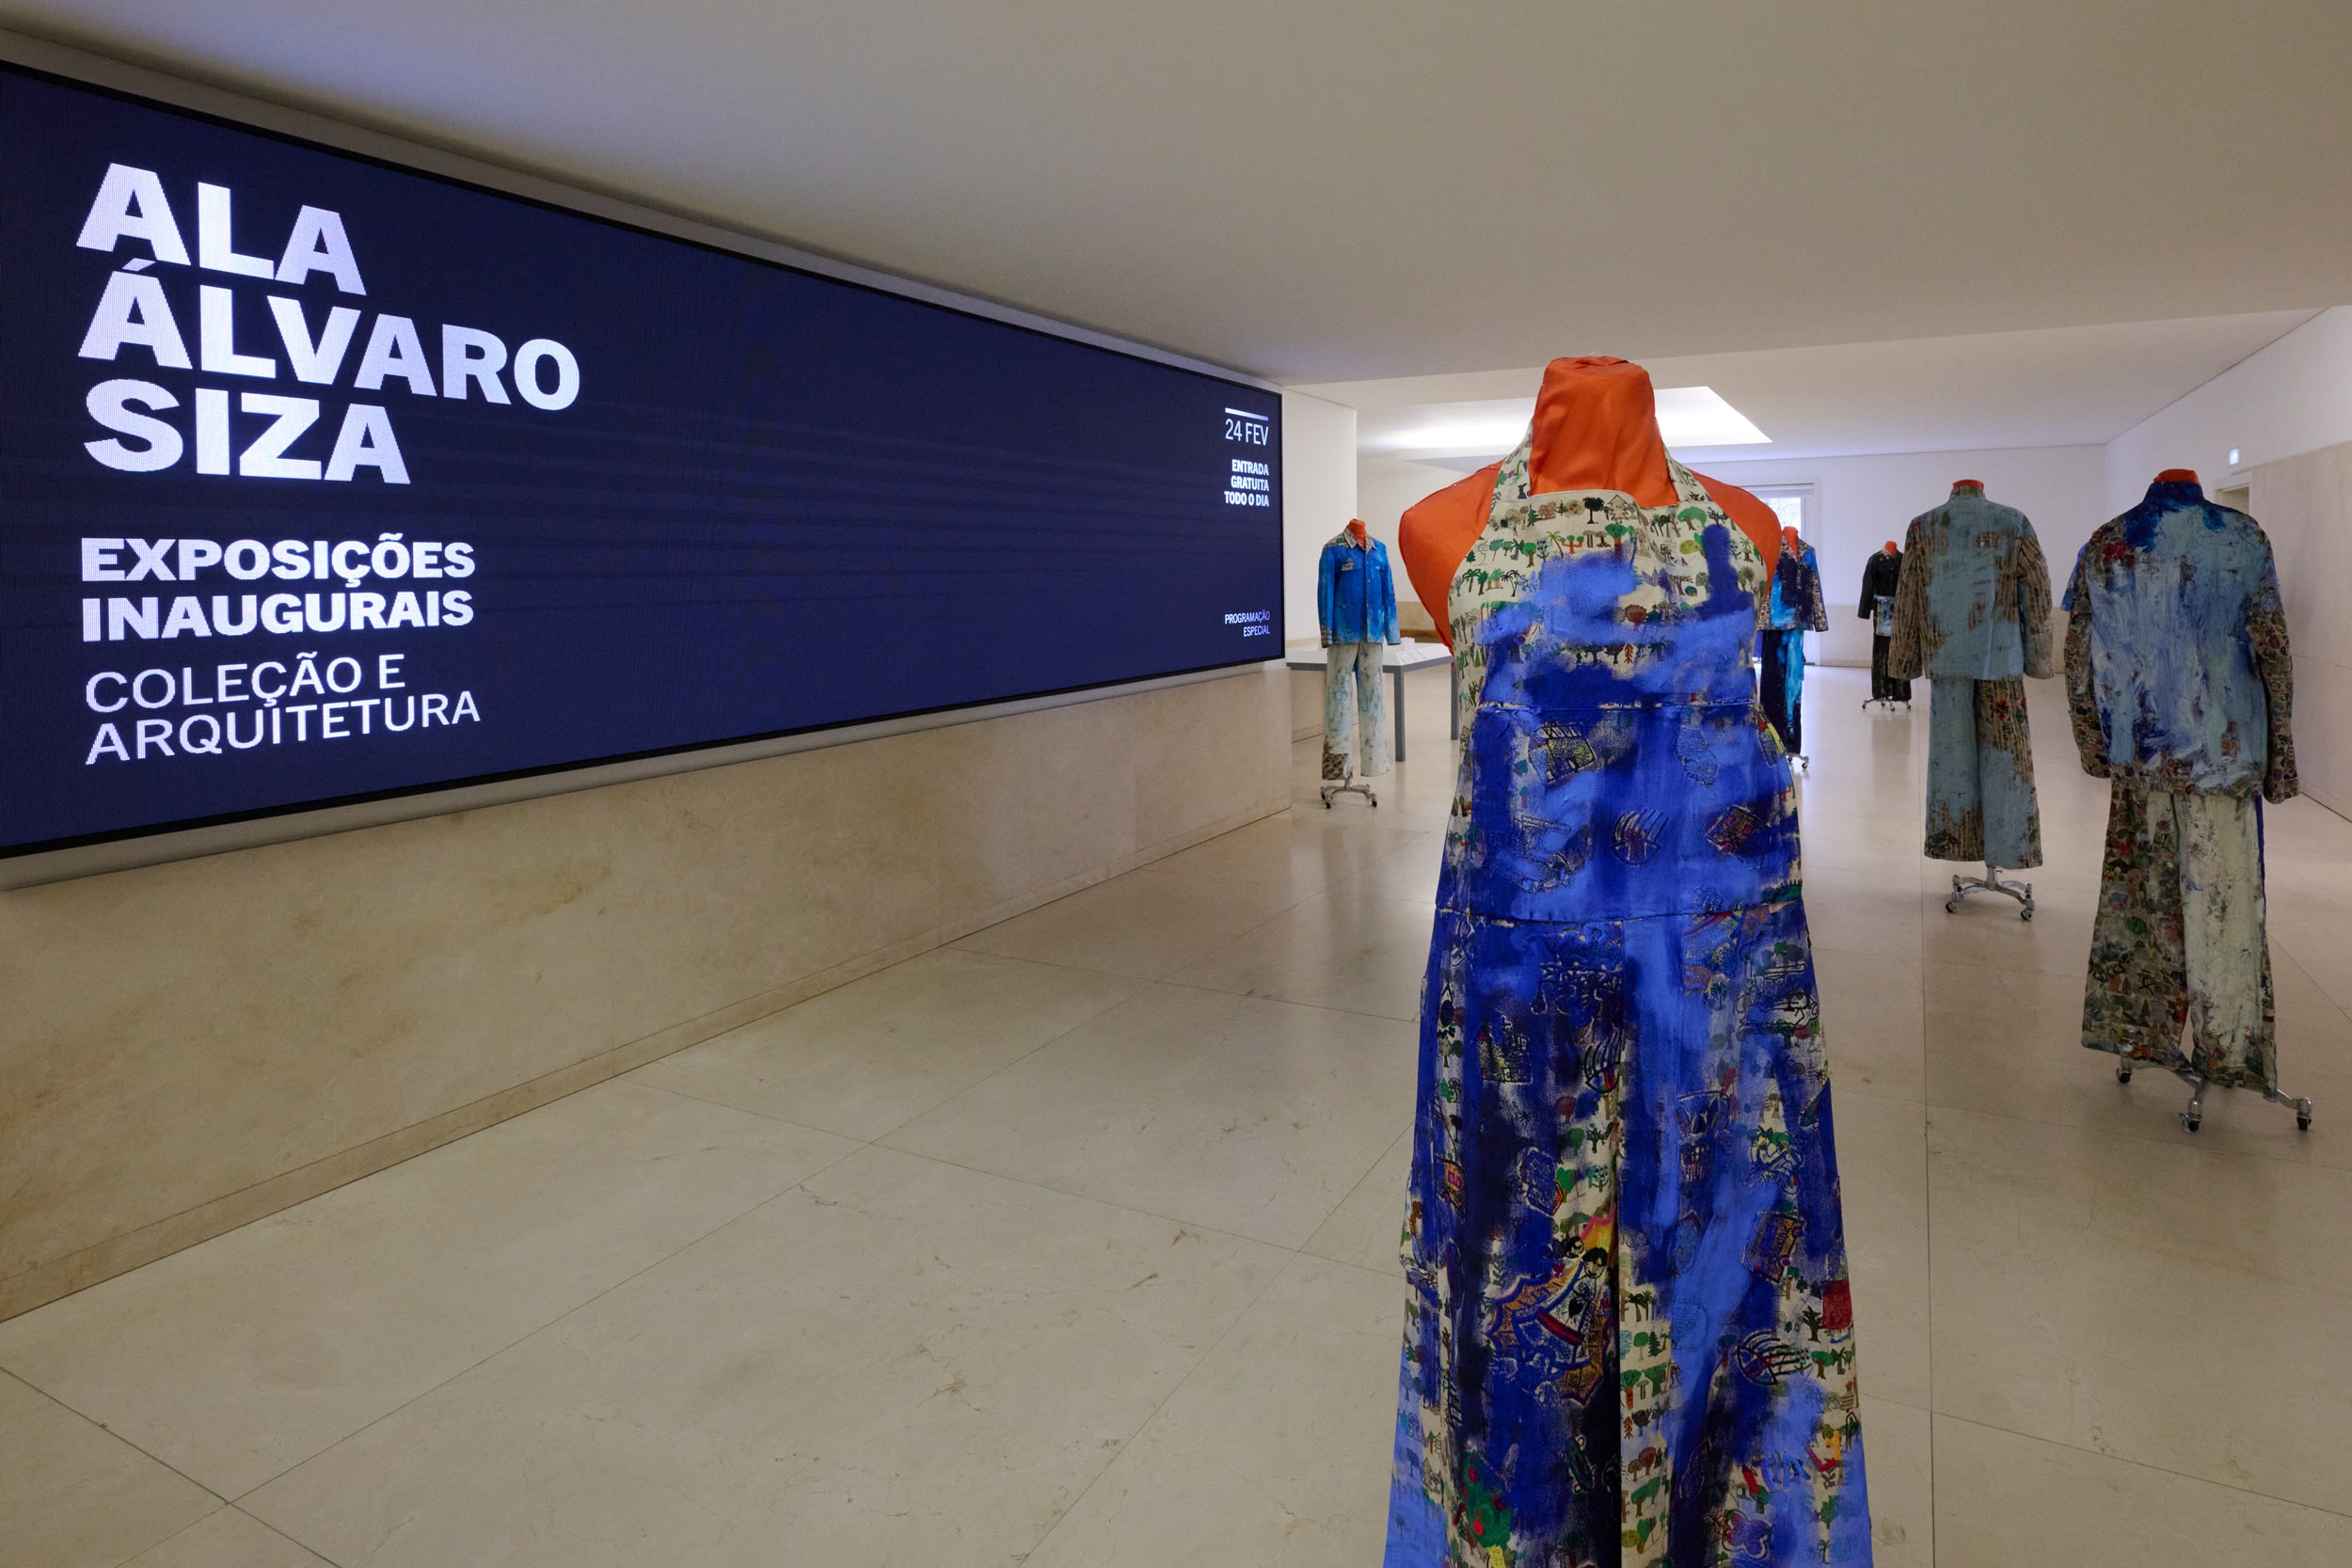 serralves museum alvaro siza wing porto portugal anagrams exhibition casa collection